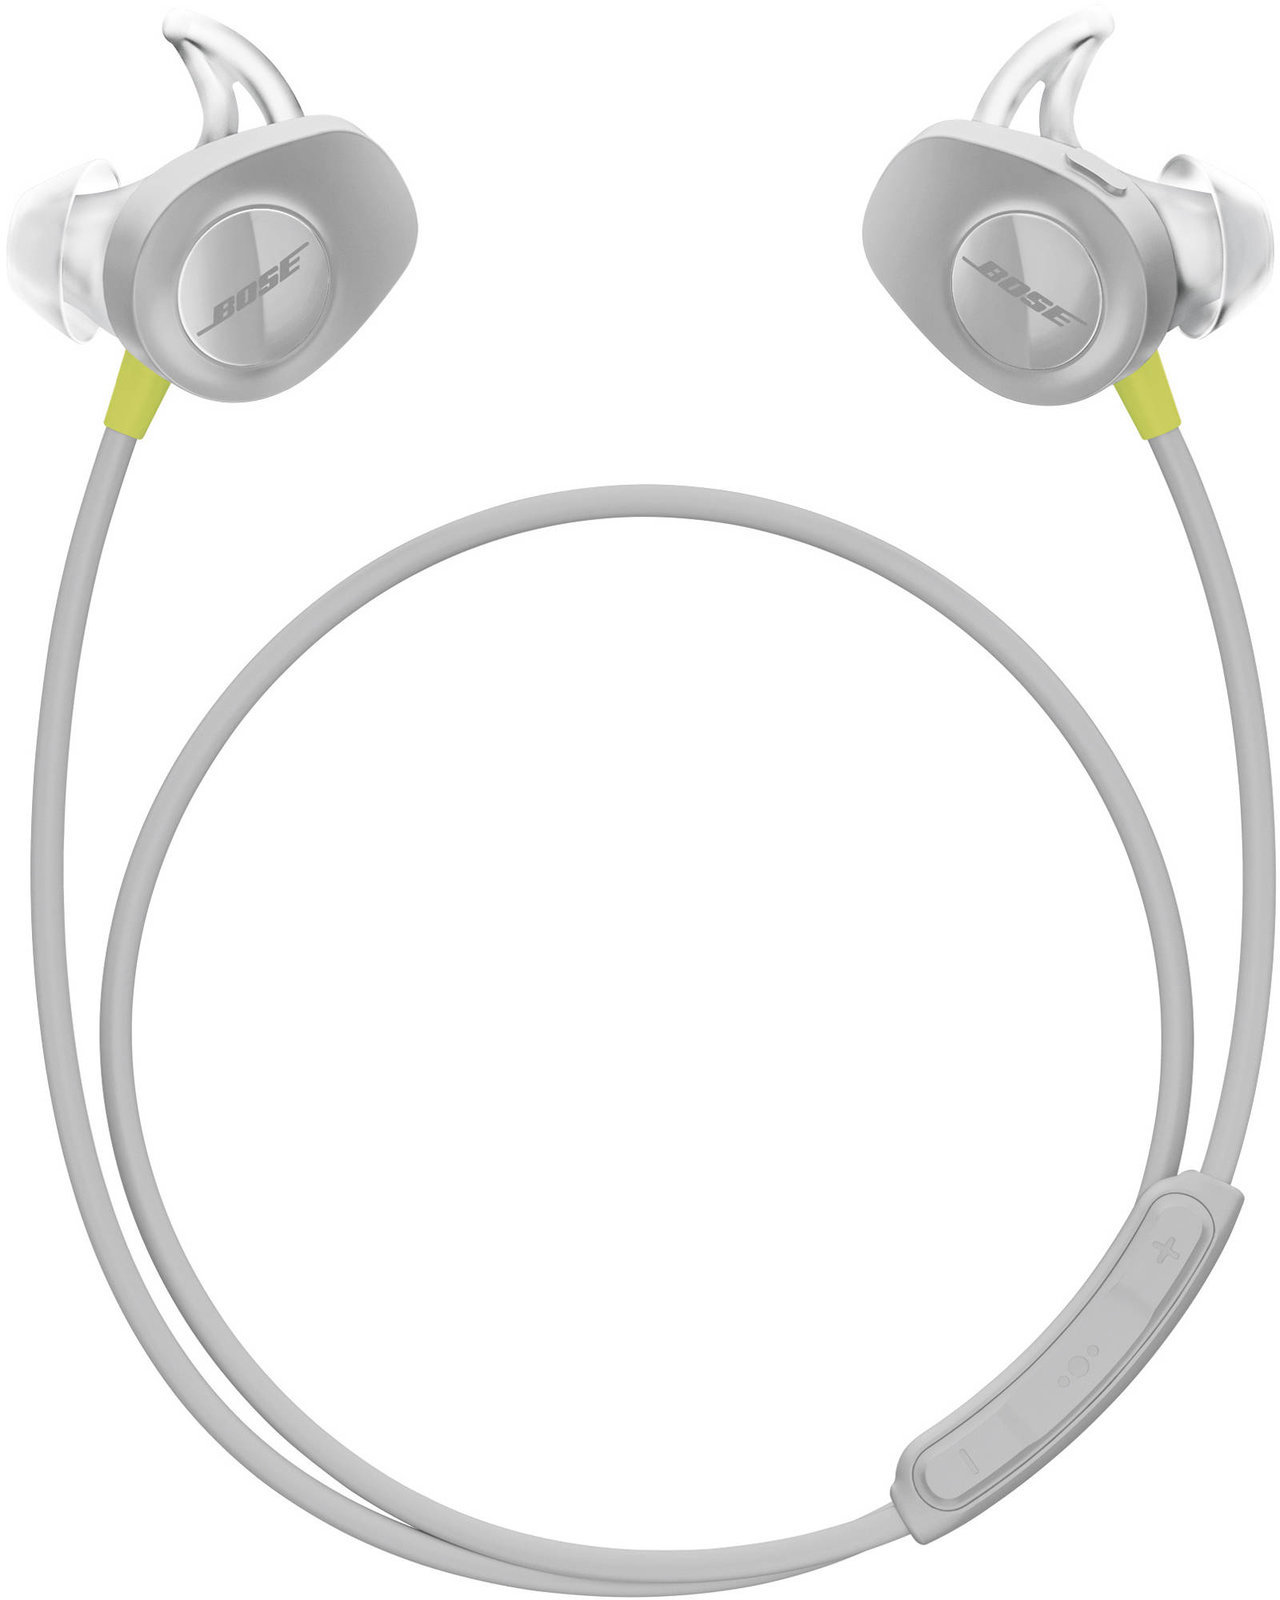 Cuffie wireless In-ear Bose SoundSport Wireless in-ear headphones Lemon